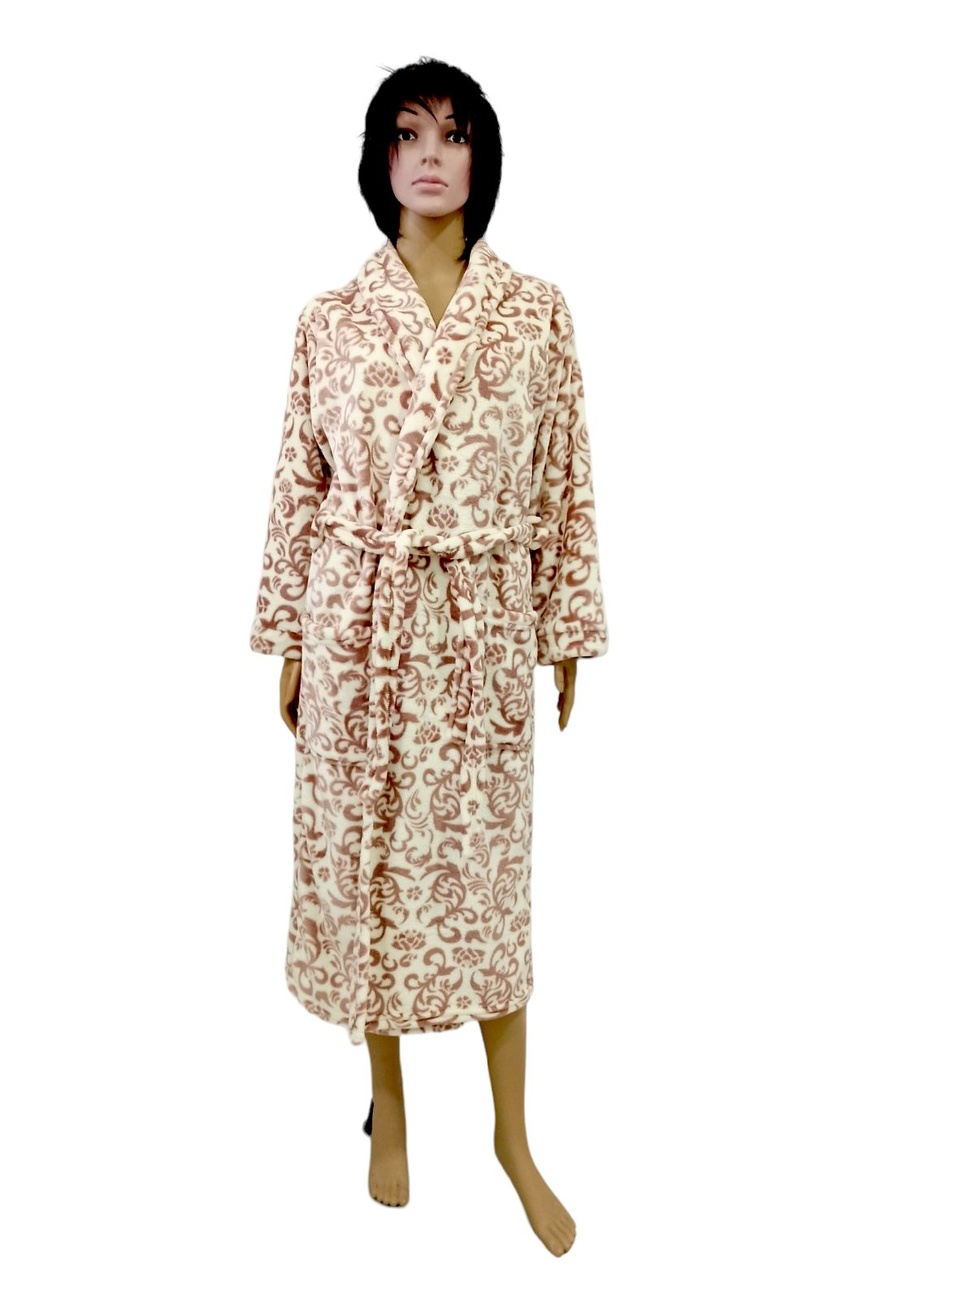 Жіночий халат "ПАУЛА" рвана махра коричневого кольору, Коричневий, 56-58